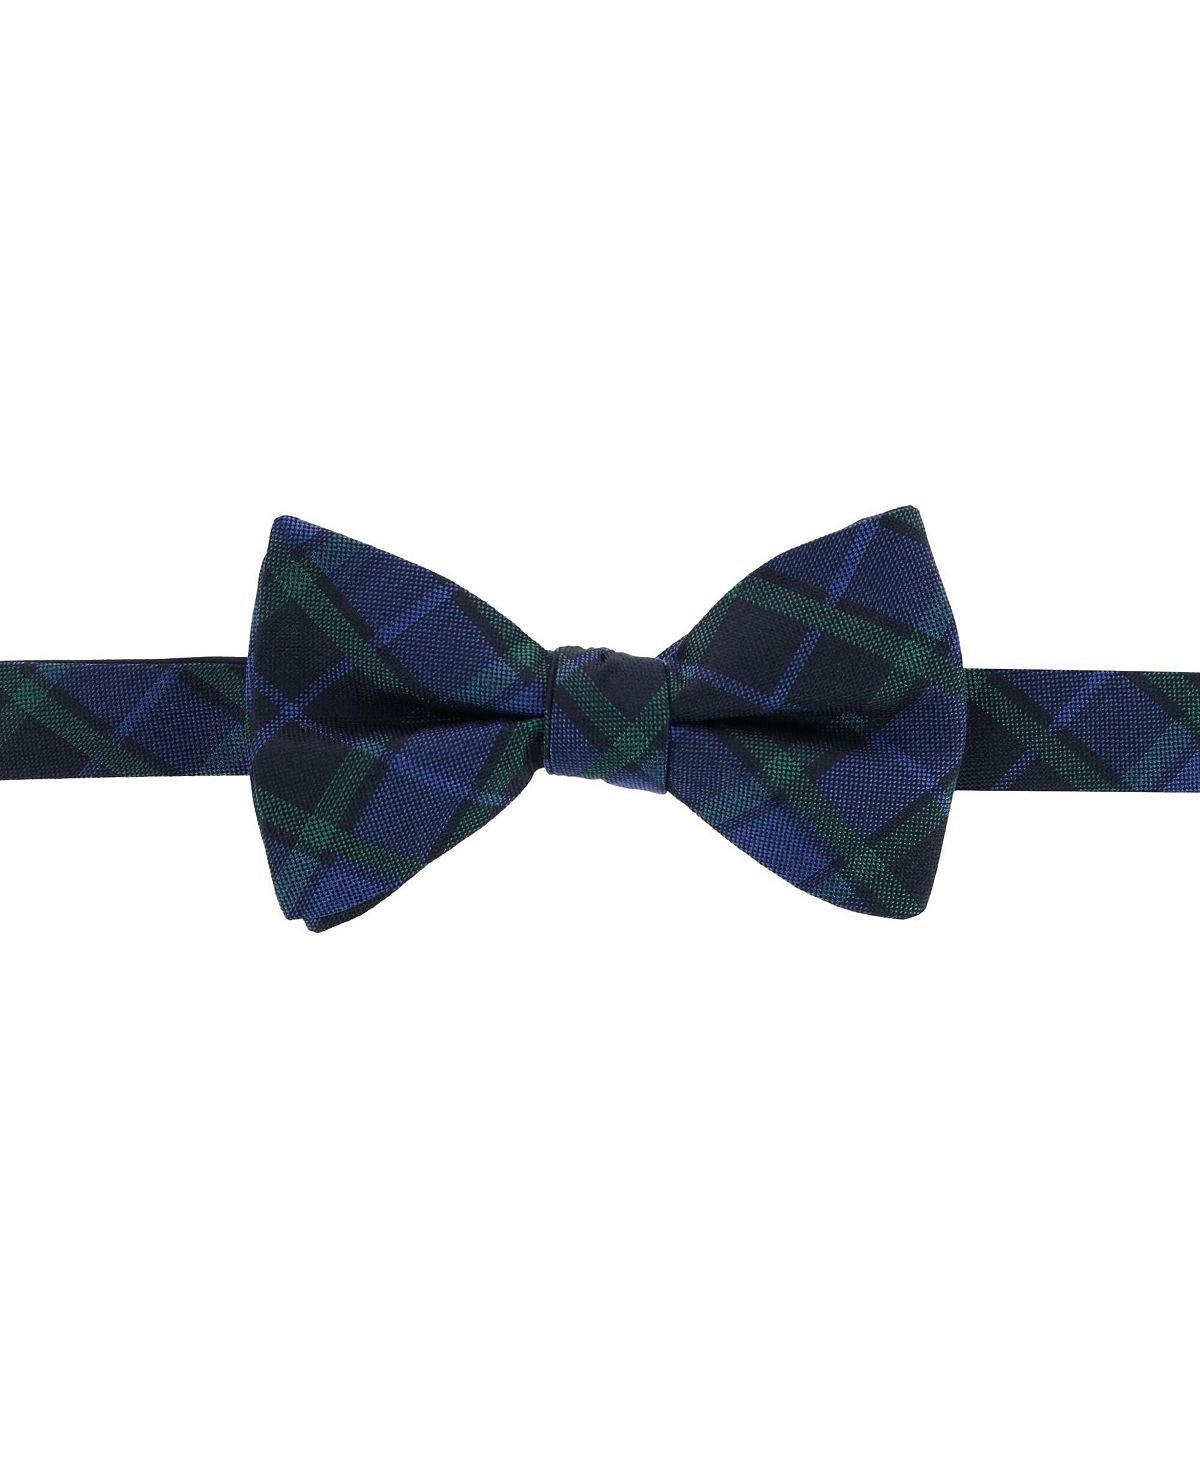 Зелено-темно-синий шелковый галстук-бабочка в клетку Ives Blackwatch TRAFALGAR галстук на резинке синий в клетку gulliver